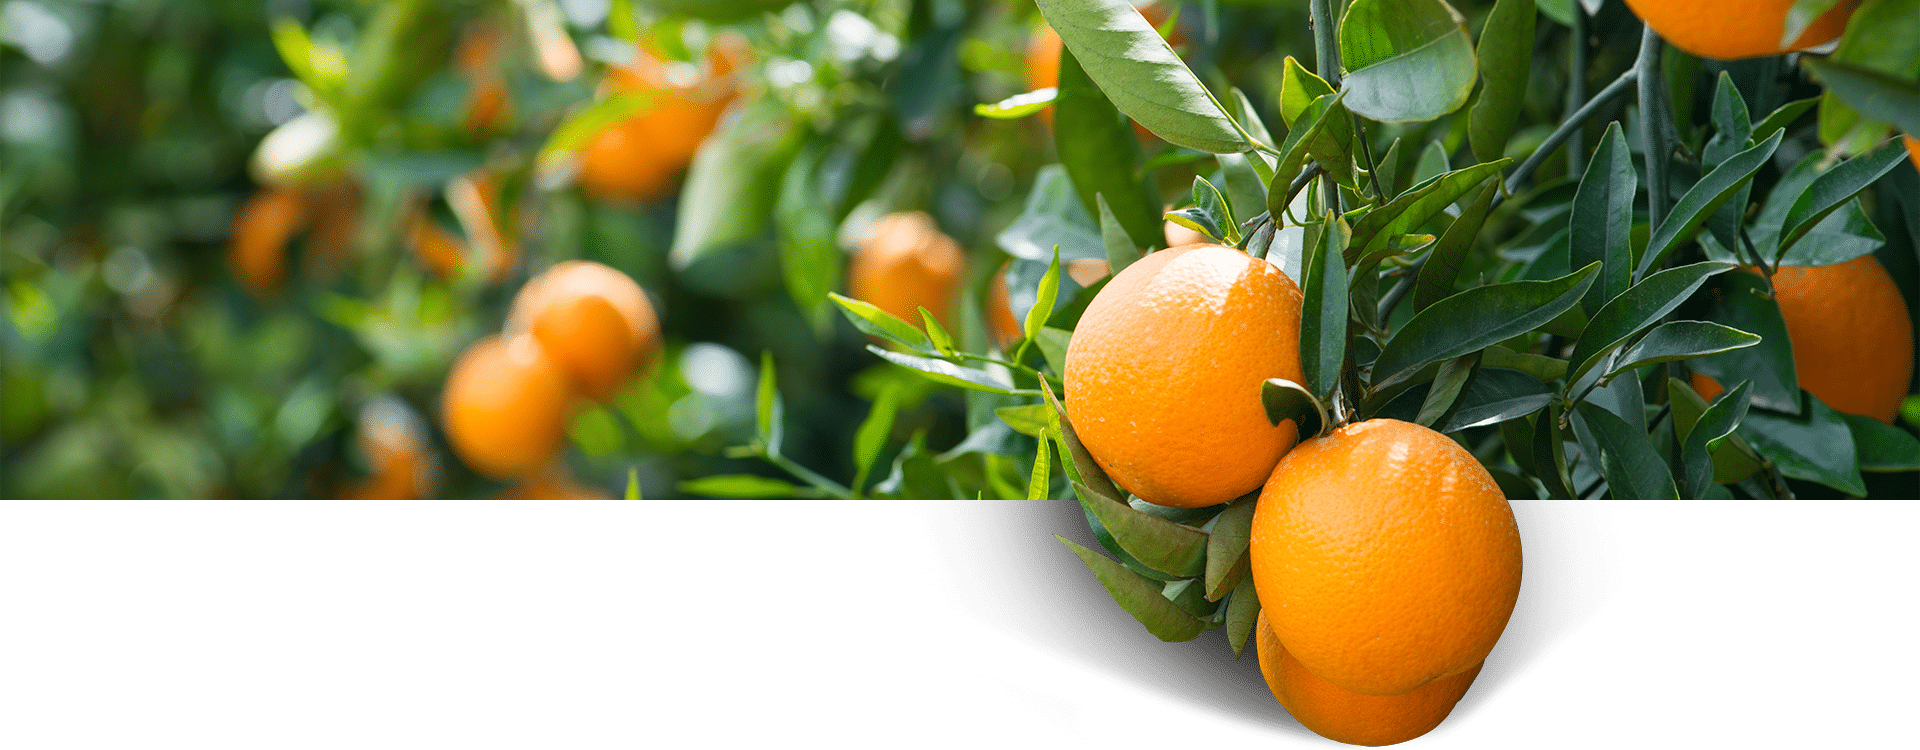 marketing-alimentacion-naranjas